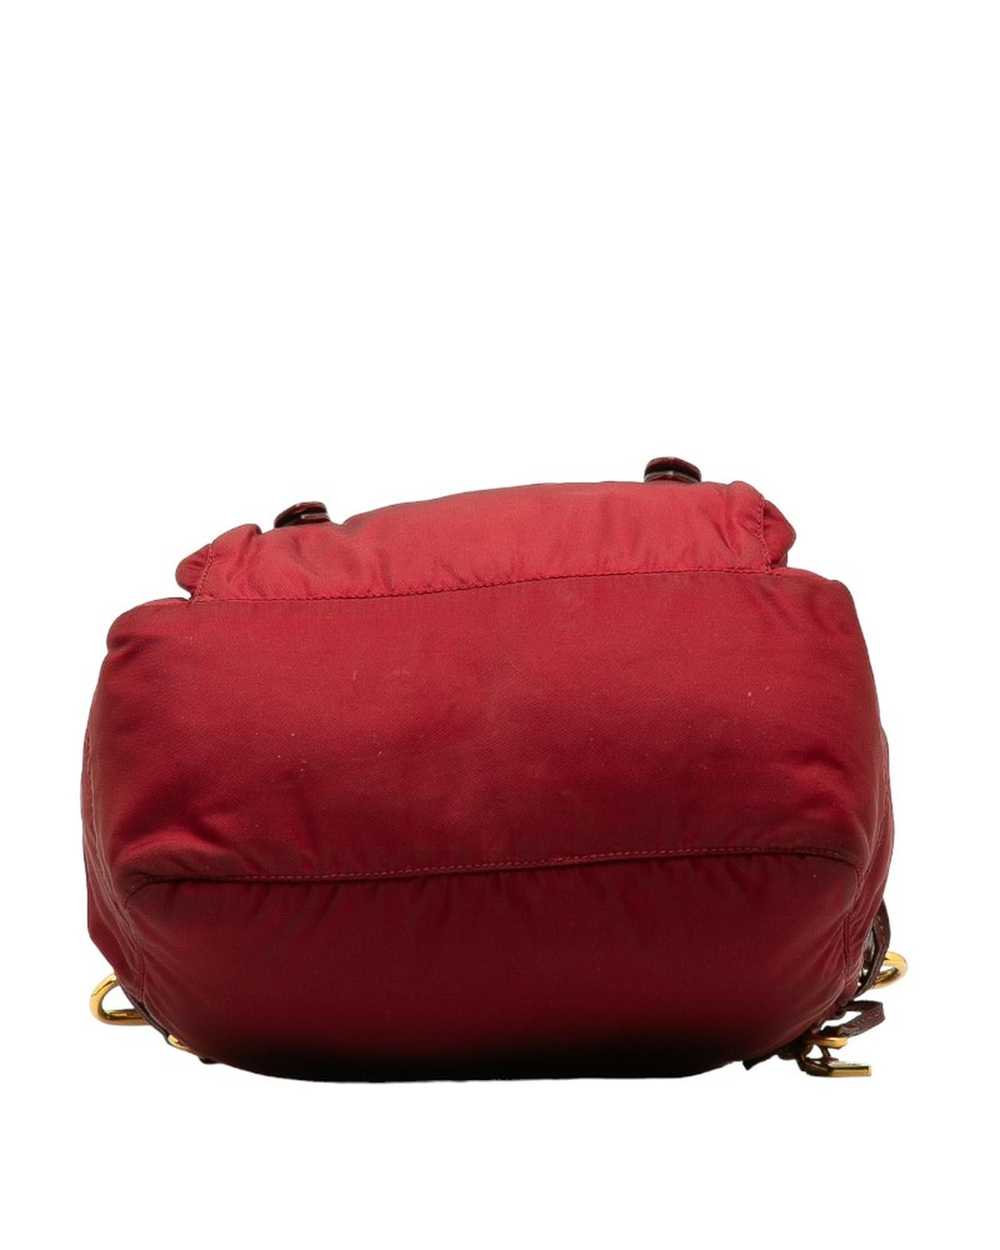 Prada Rose Gold Tessuto Messenger Bag in AB Condi… - image 4